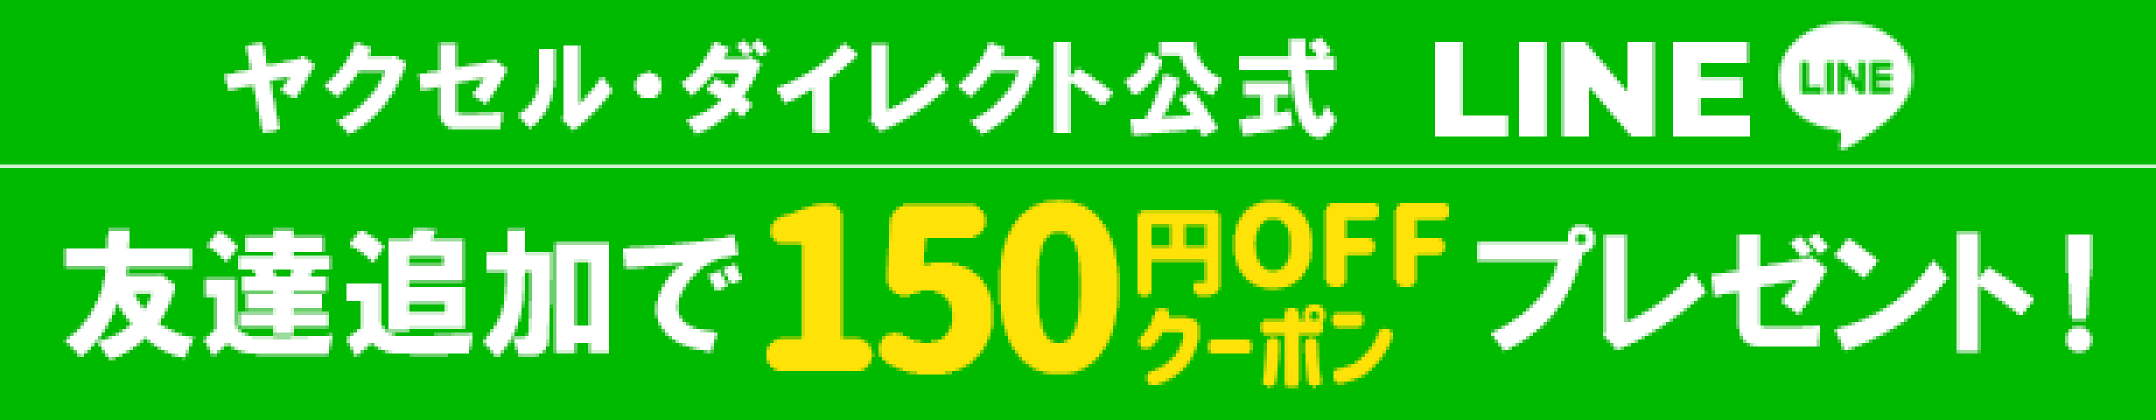 LINE友達登録150円OFFクーポン